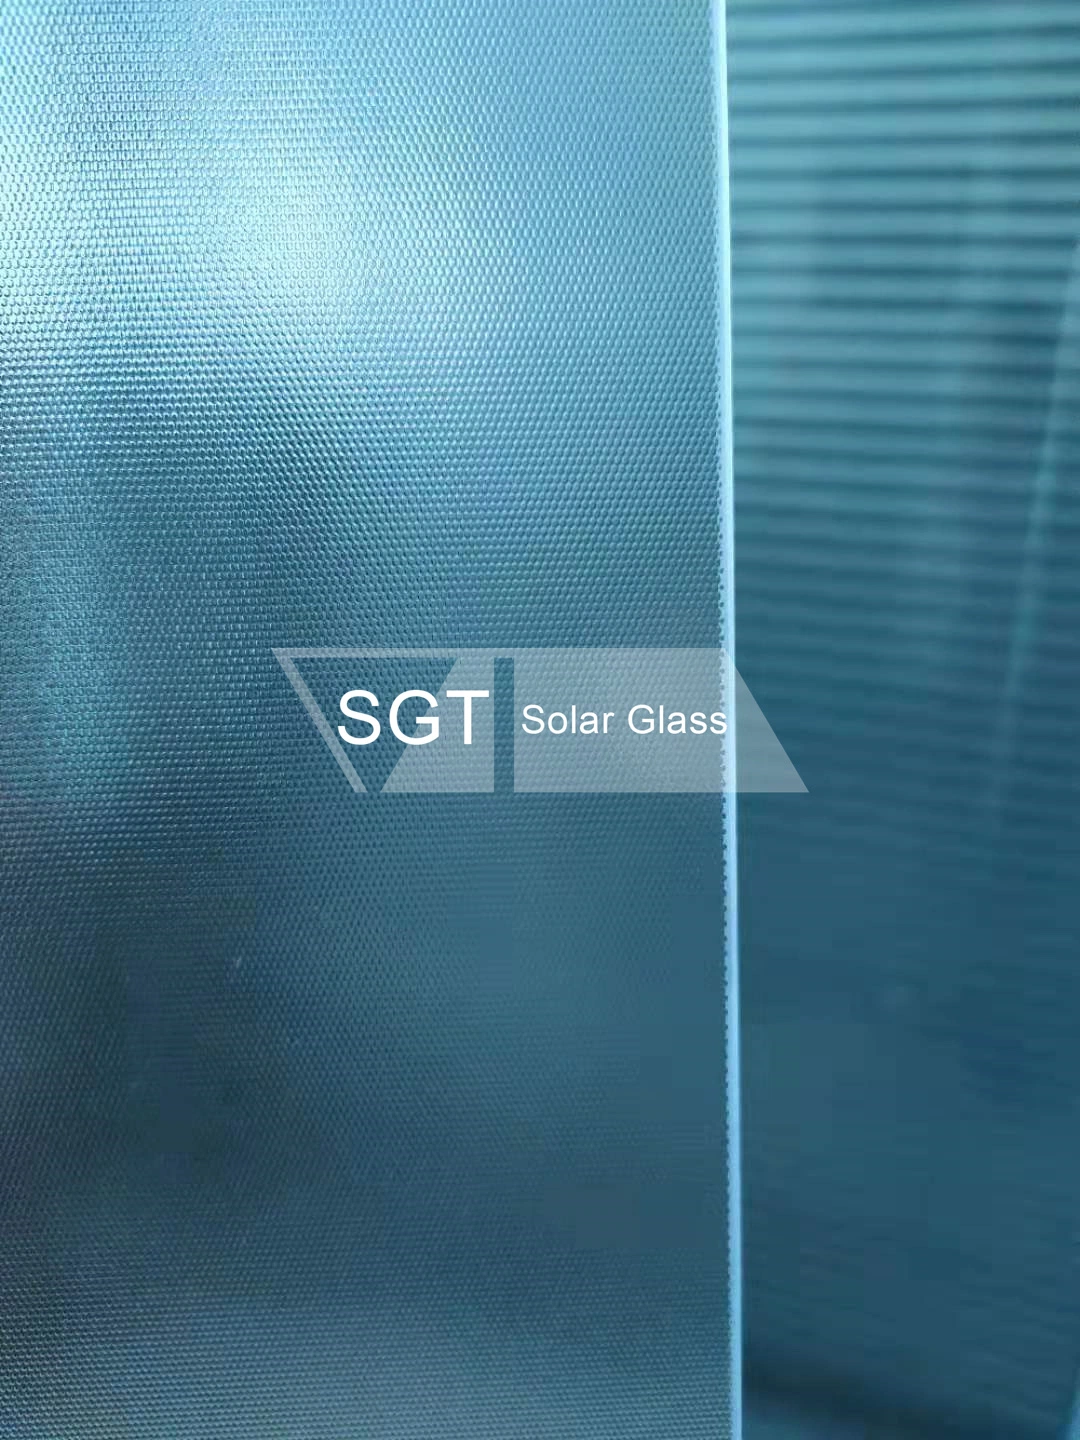 2мм-12мм стекло зеркала серого цвета с зеленым цветом синий цвета бронзы оформление свободной плоской сплошной стеклянной плавающего режима / фотоэлектрические стекла/ витражными стеклами/закаленного стекла